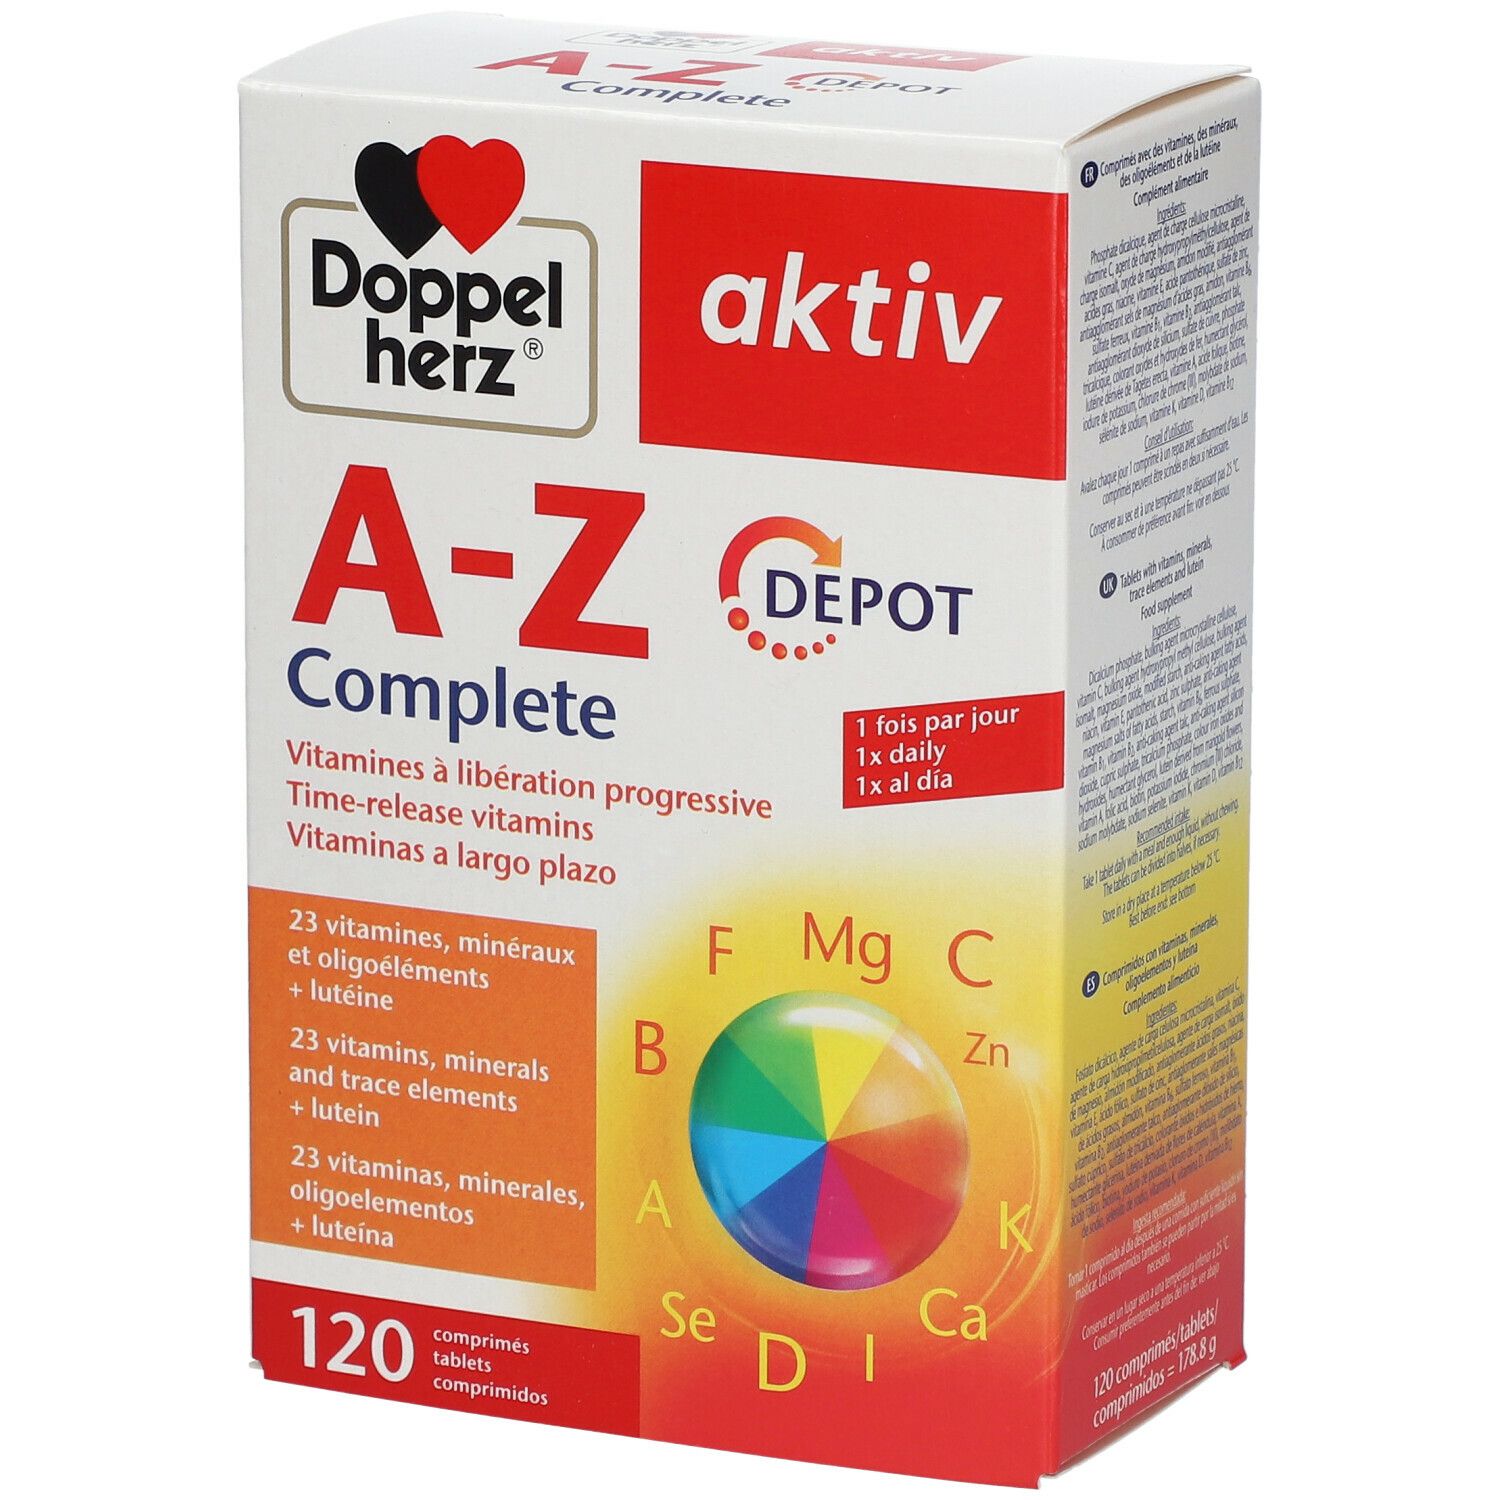 Doppelherz® aktiv A-Z Complete Depot